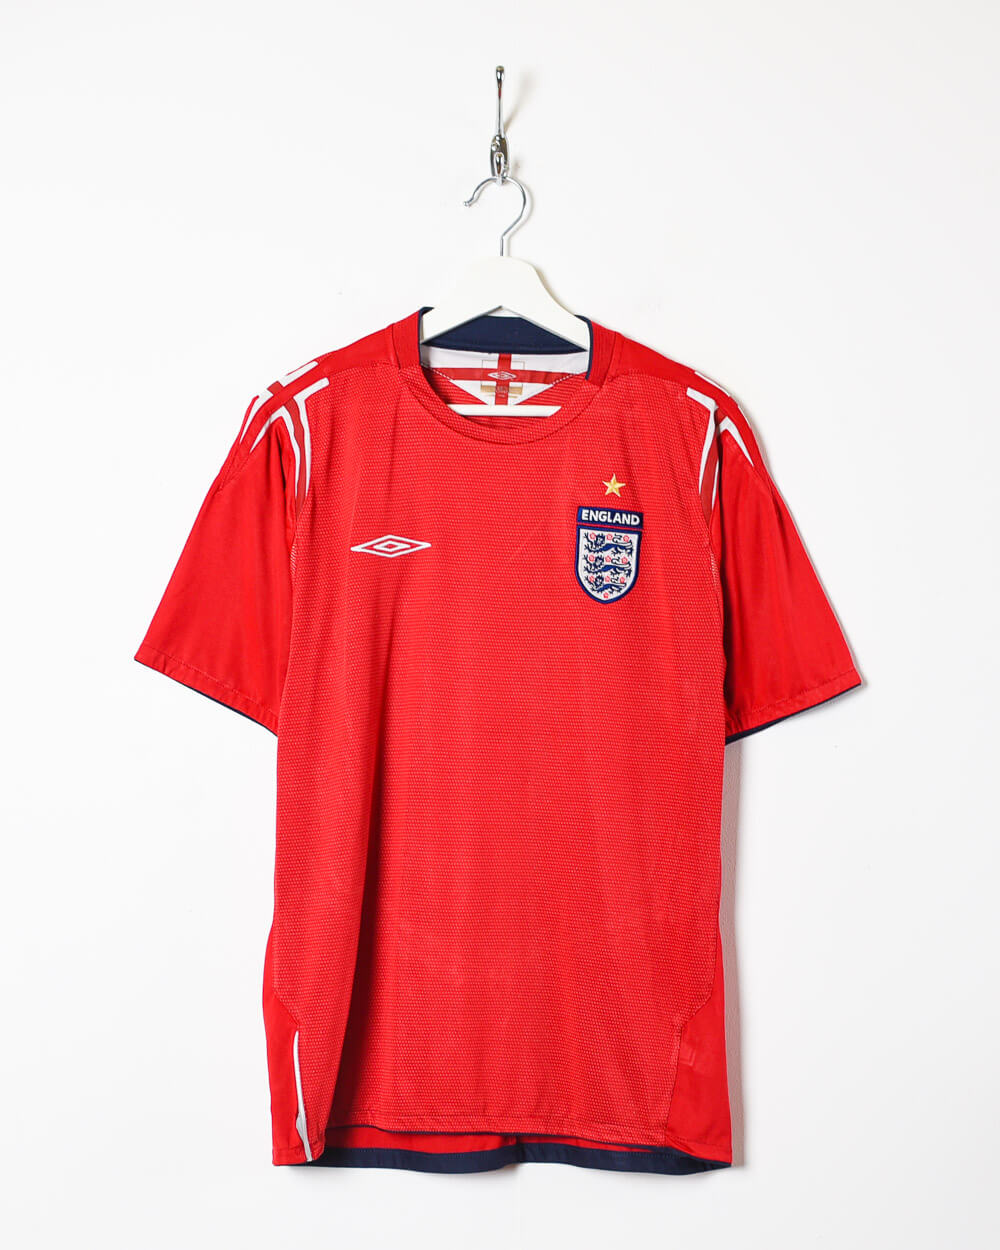 Red Umbro 2004 England Away Shirt - Medium